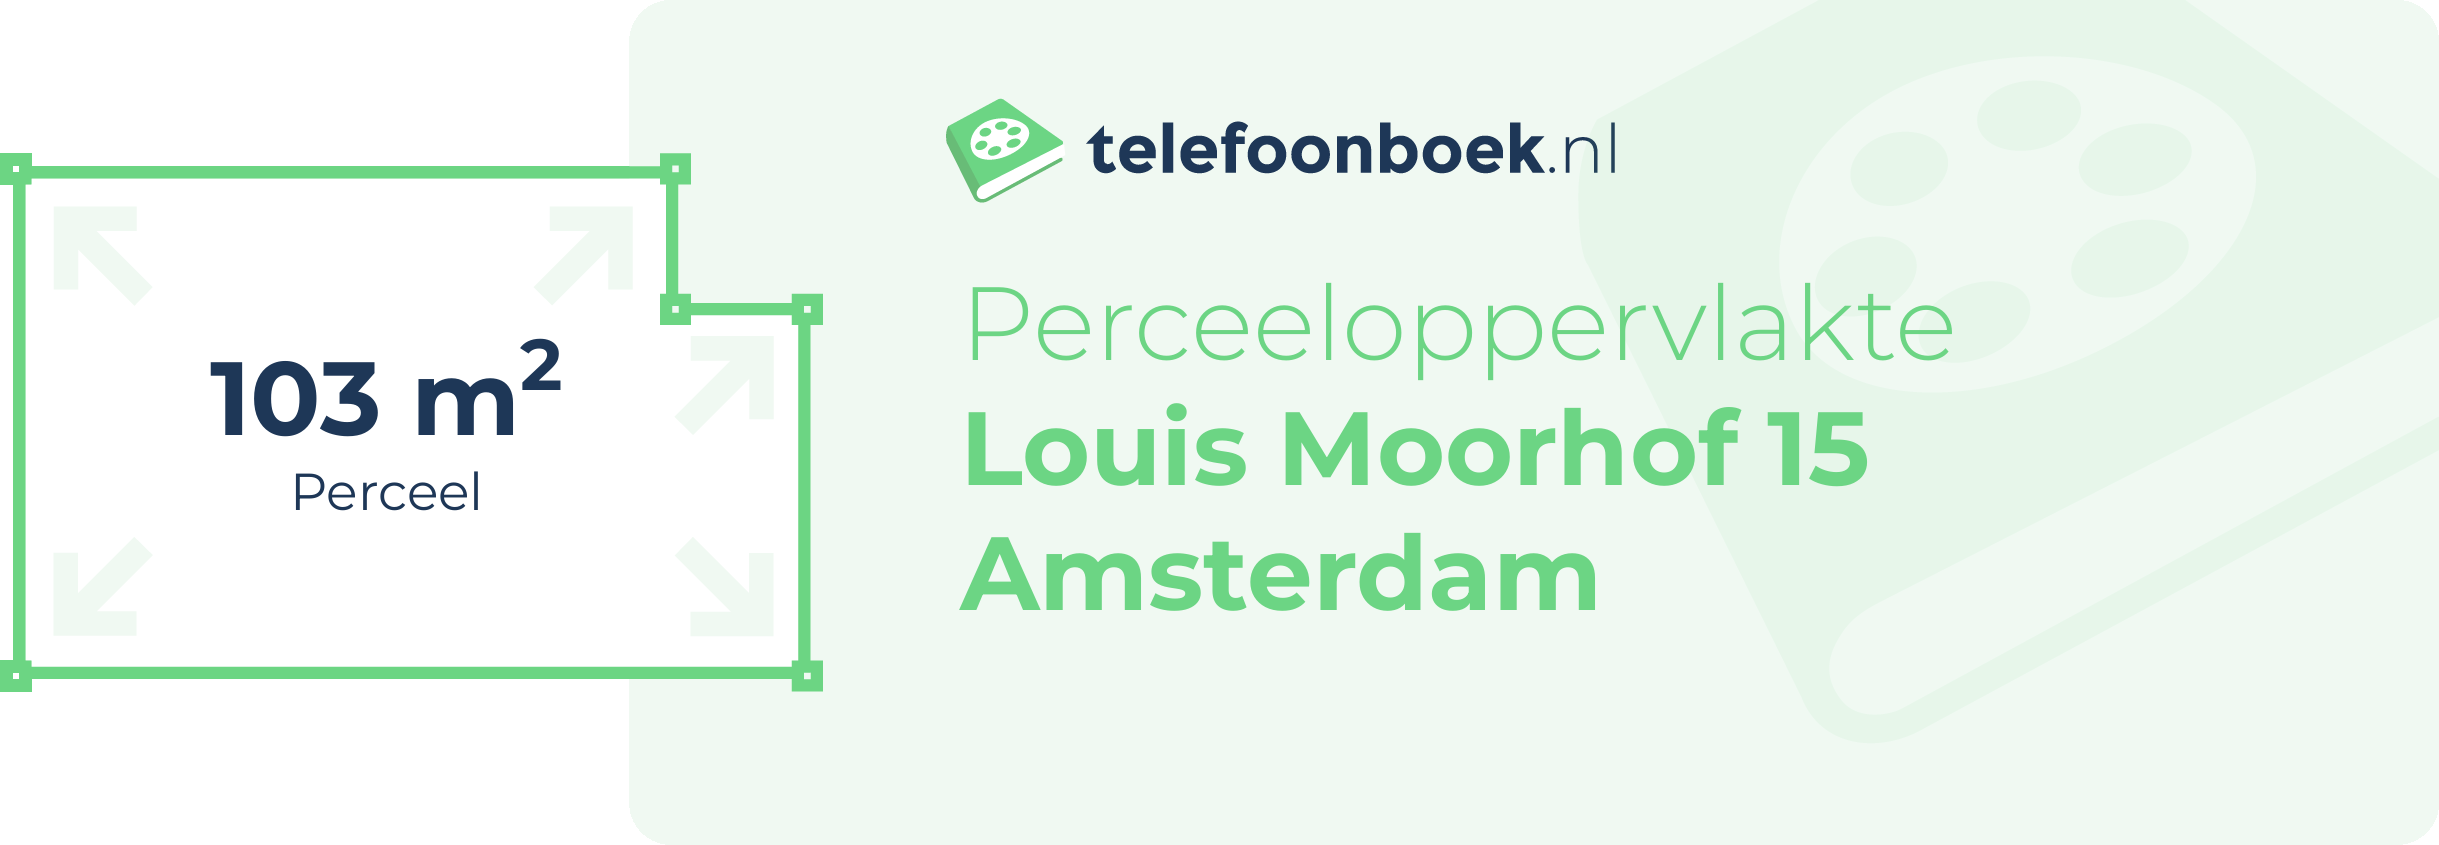 Perceeloppervlakte Louis Moorhof 15 Amsterdam